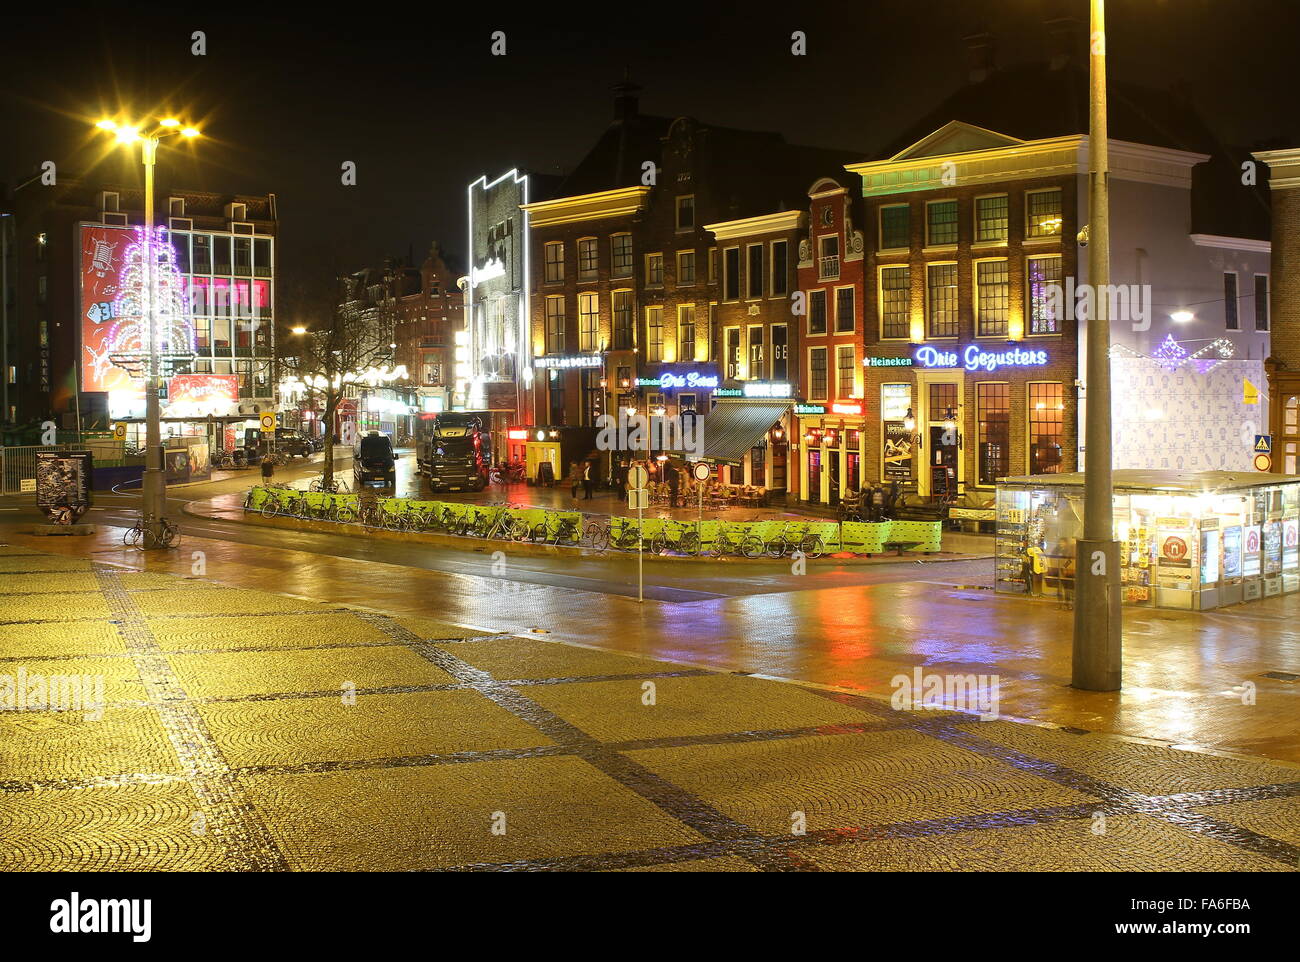 Côté Sud de la place centrale (Grote Markt) à Groningue, Pays-Bas la nuit, à l'égard Oosterstraat et Poelestraat Banque D'Images